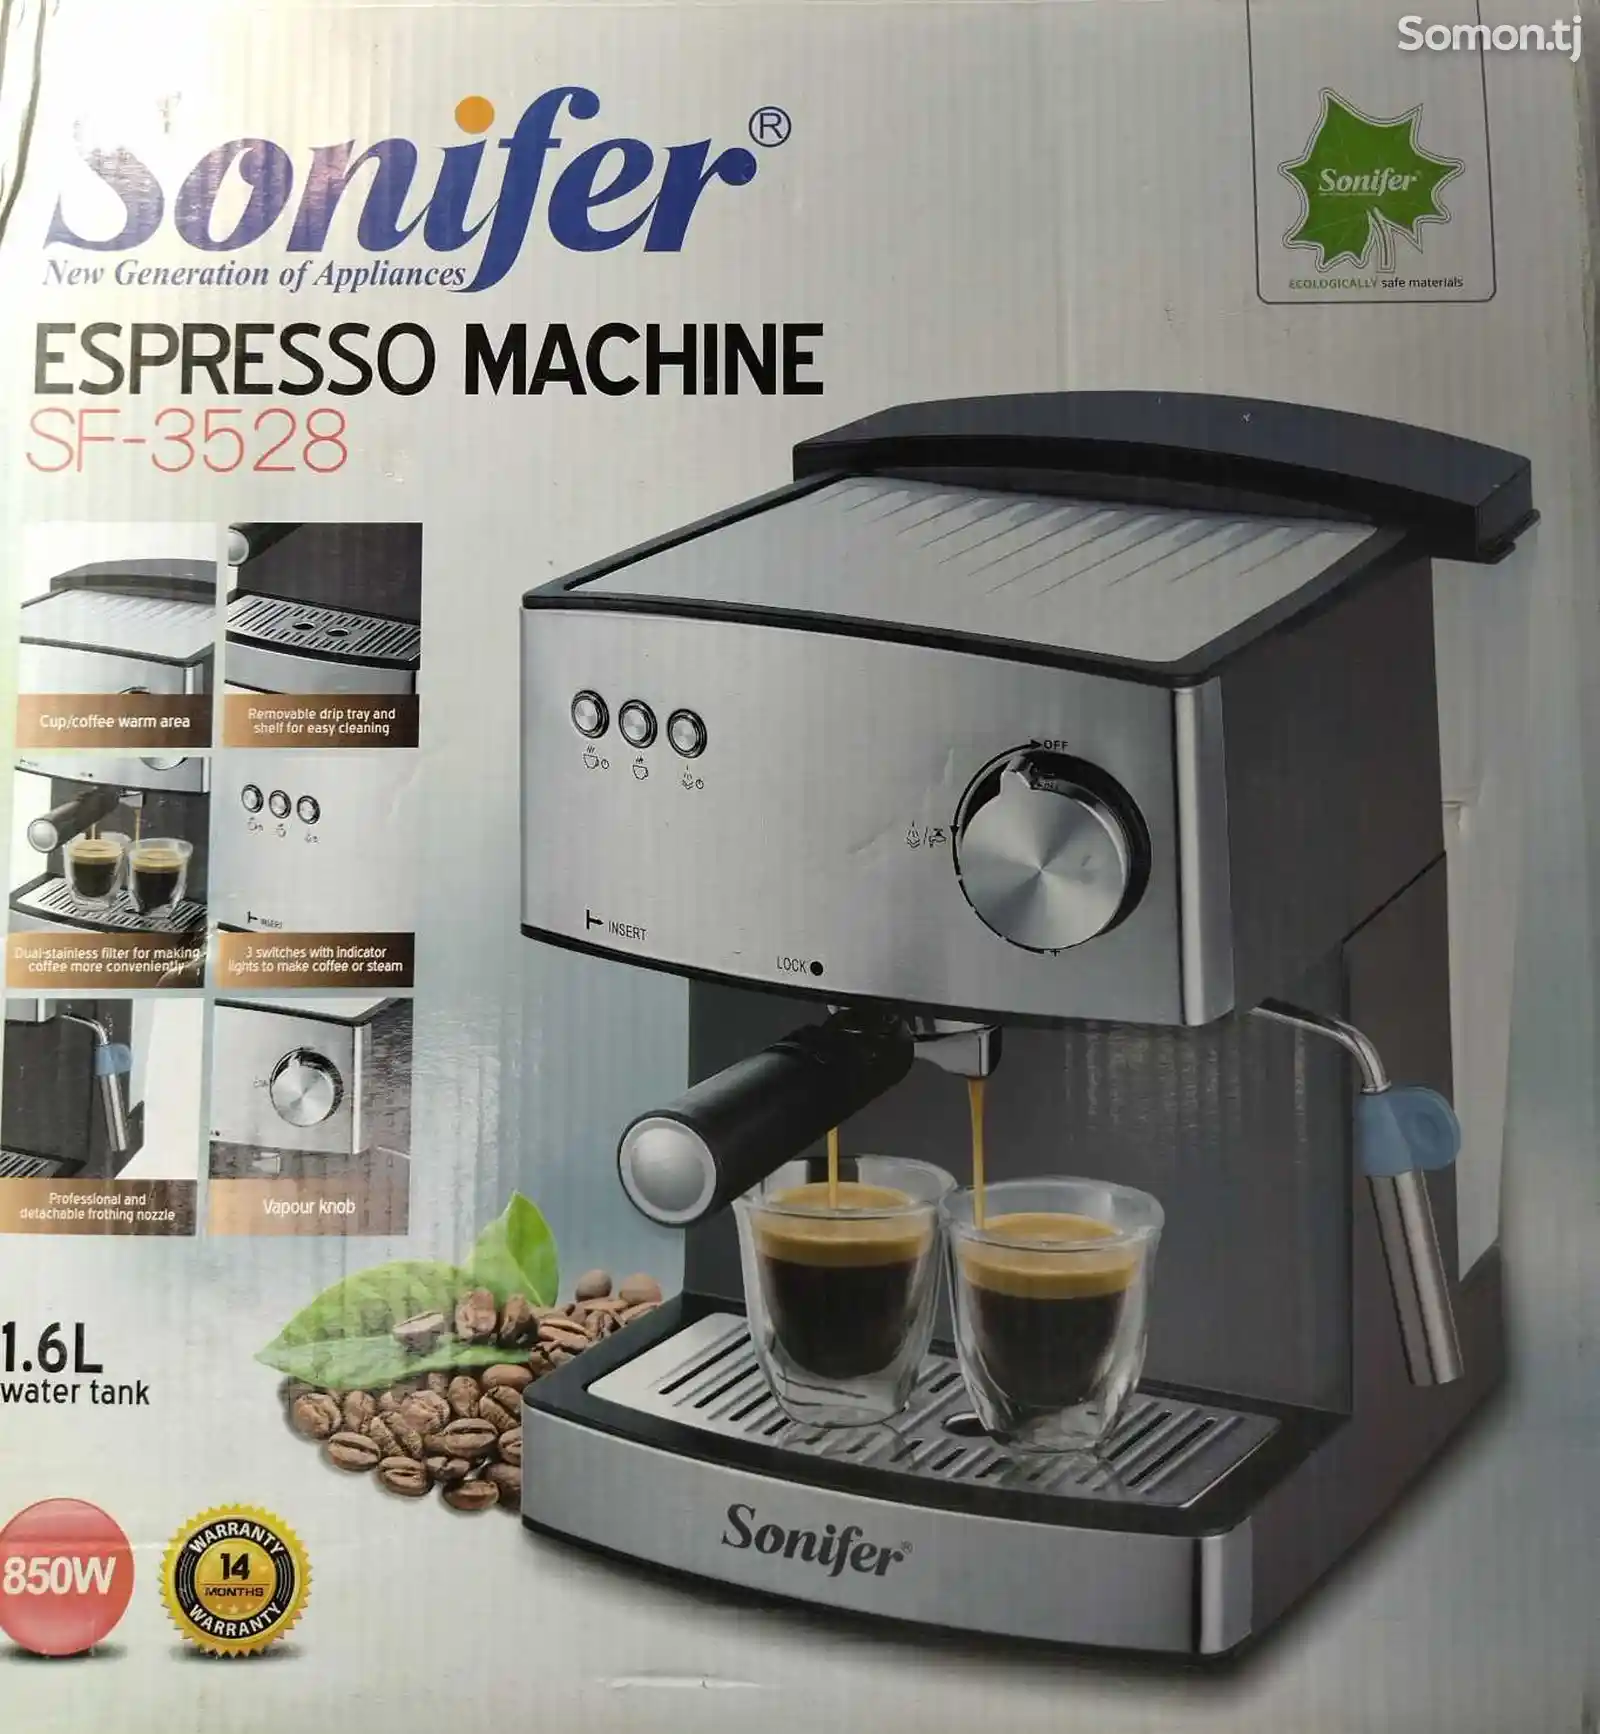 Кофеварка Sonifer